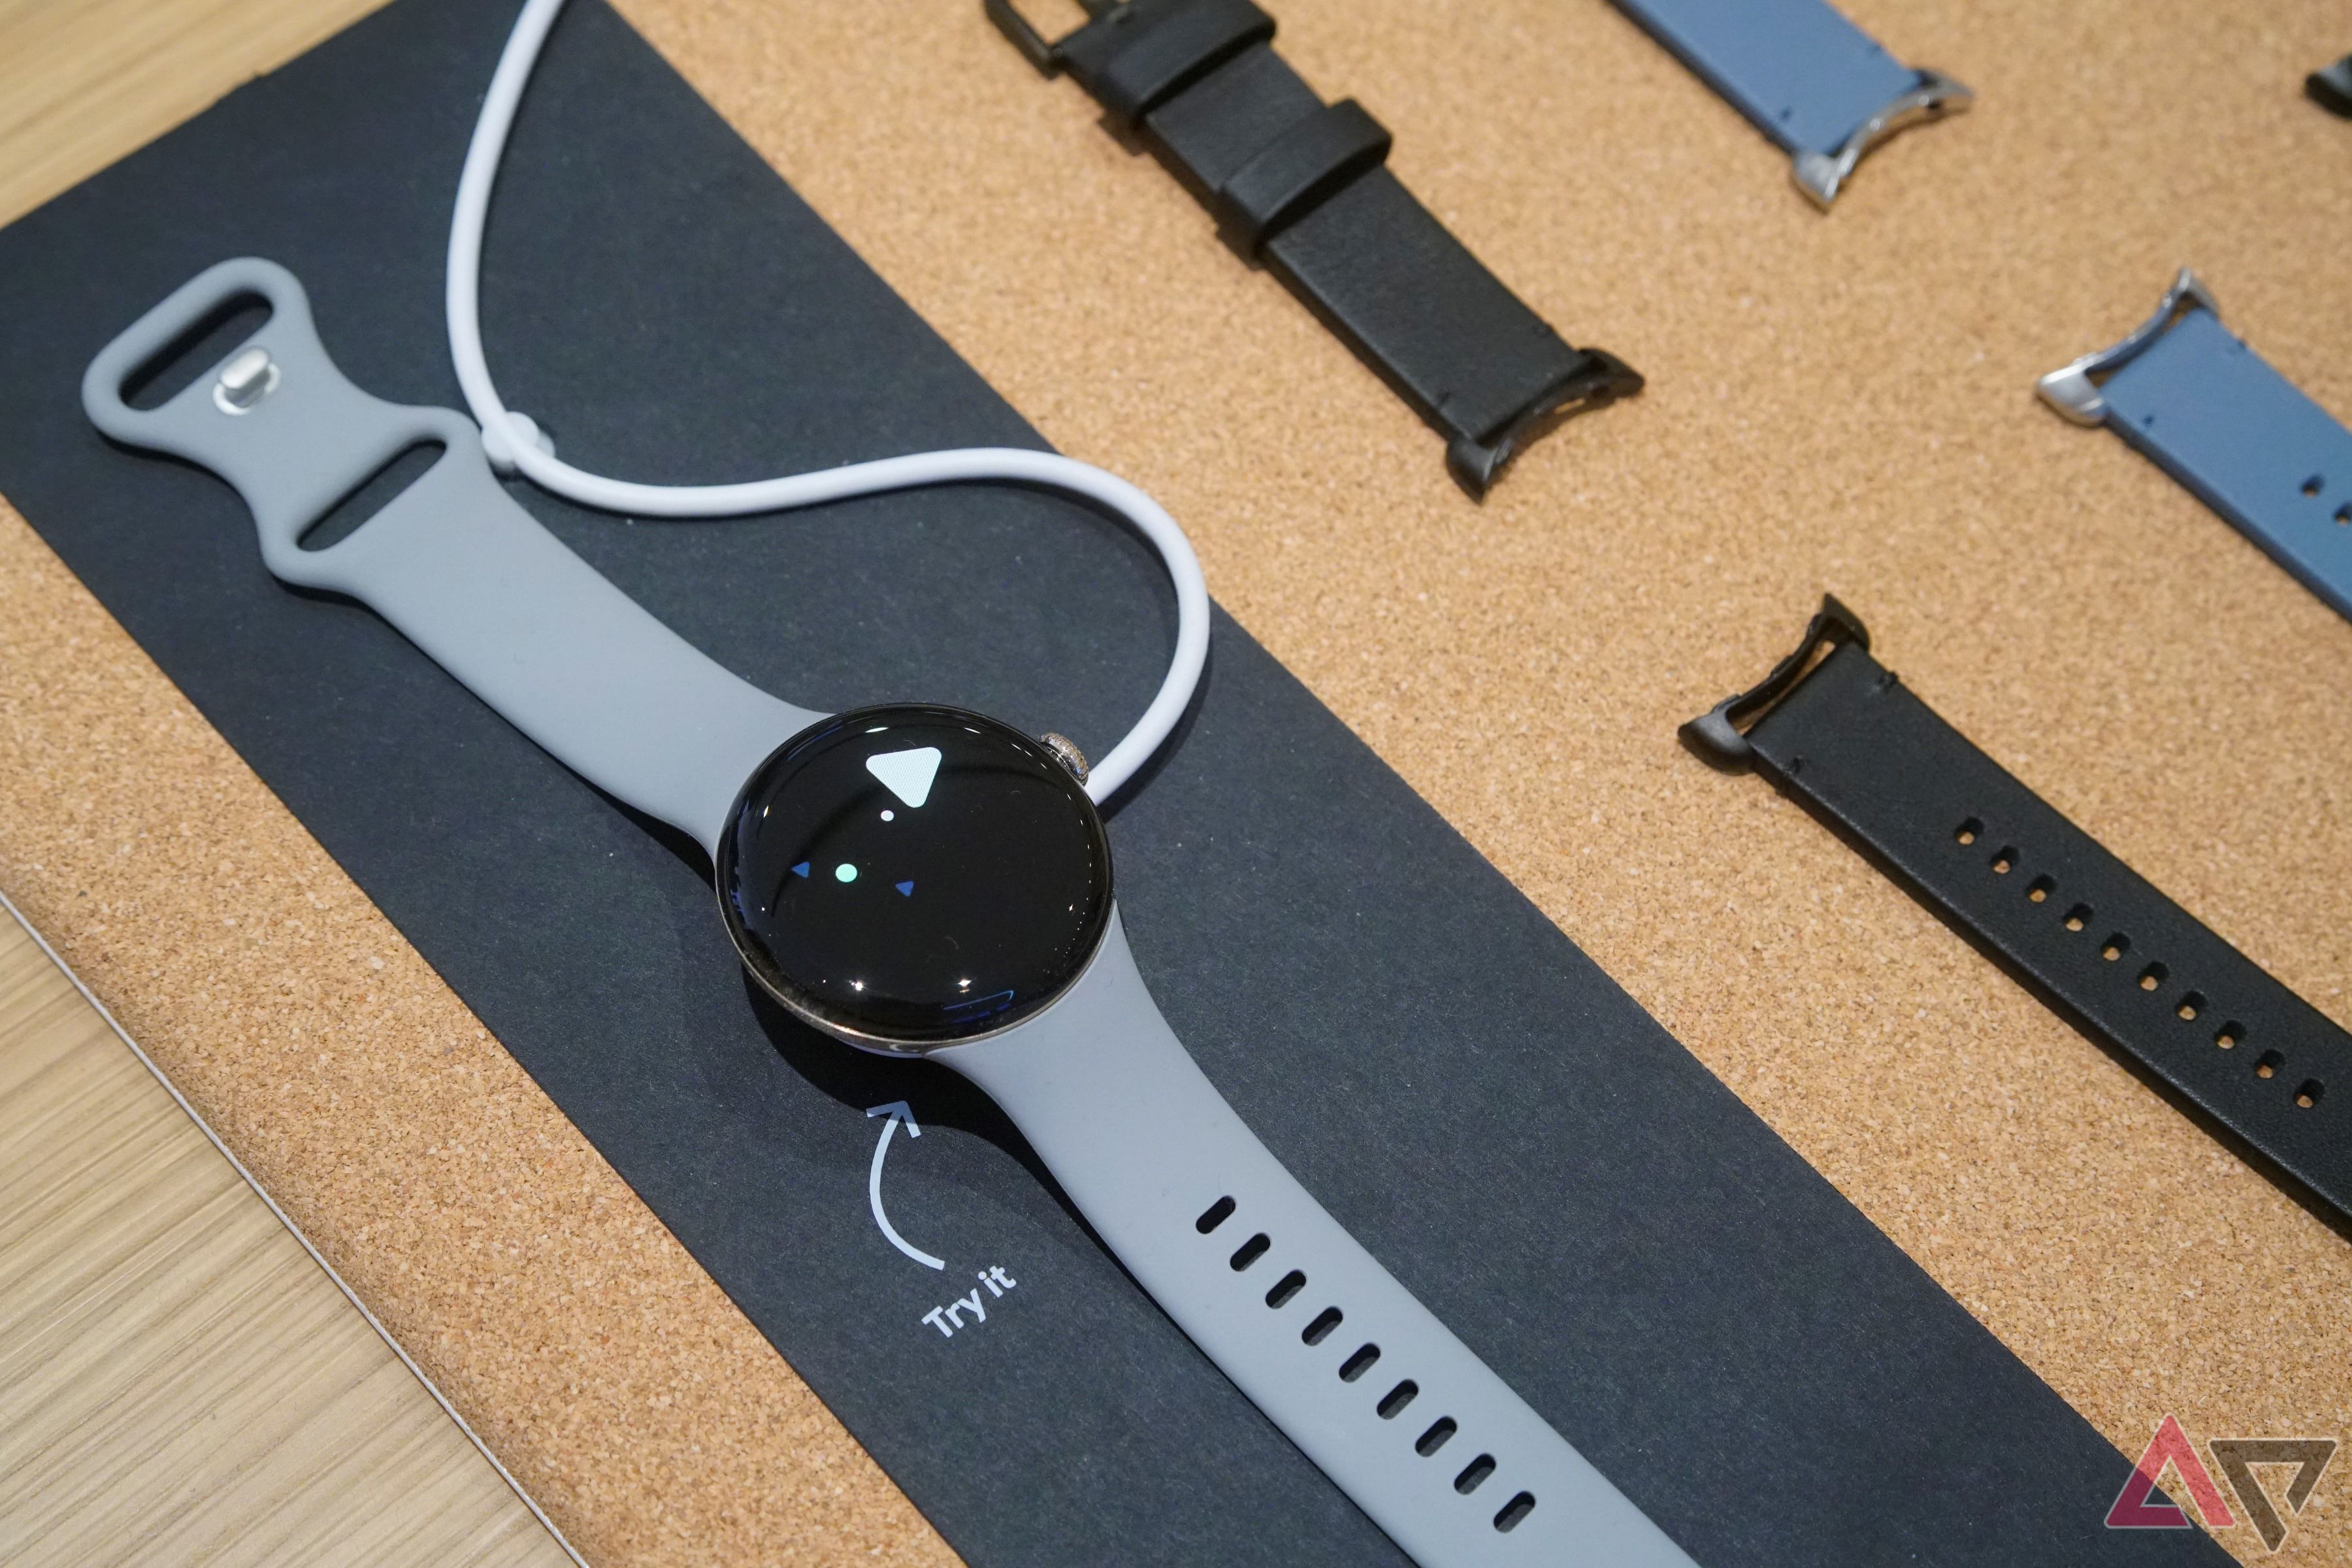 Um Pixel Watch 2 colocado em uma mesa de demonstração no varejo.